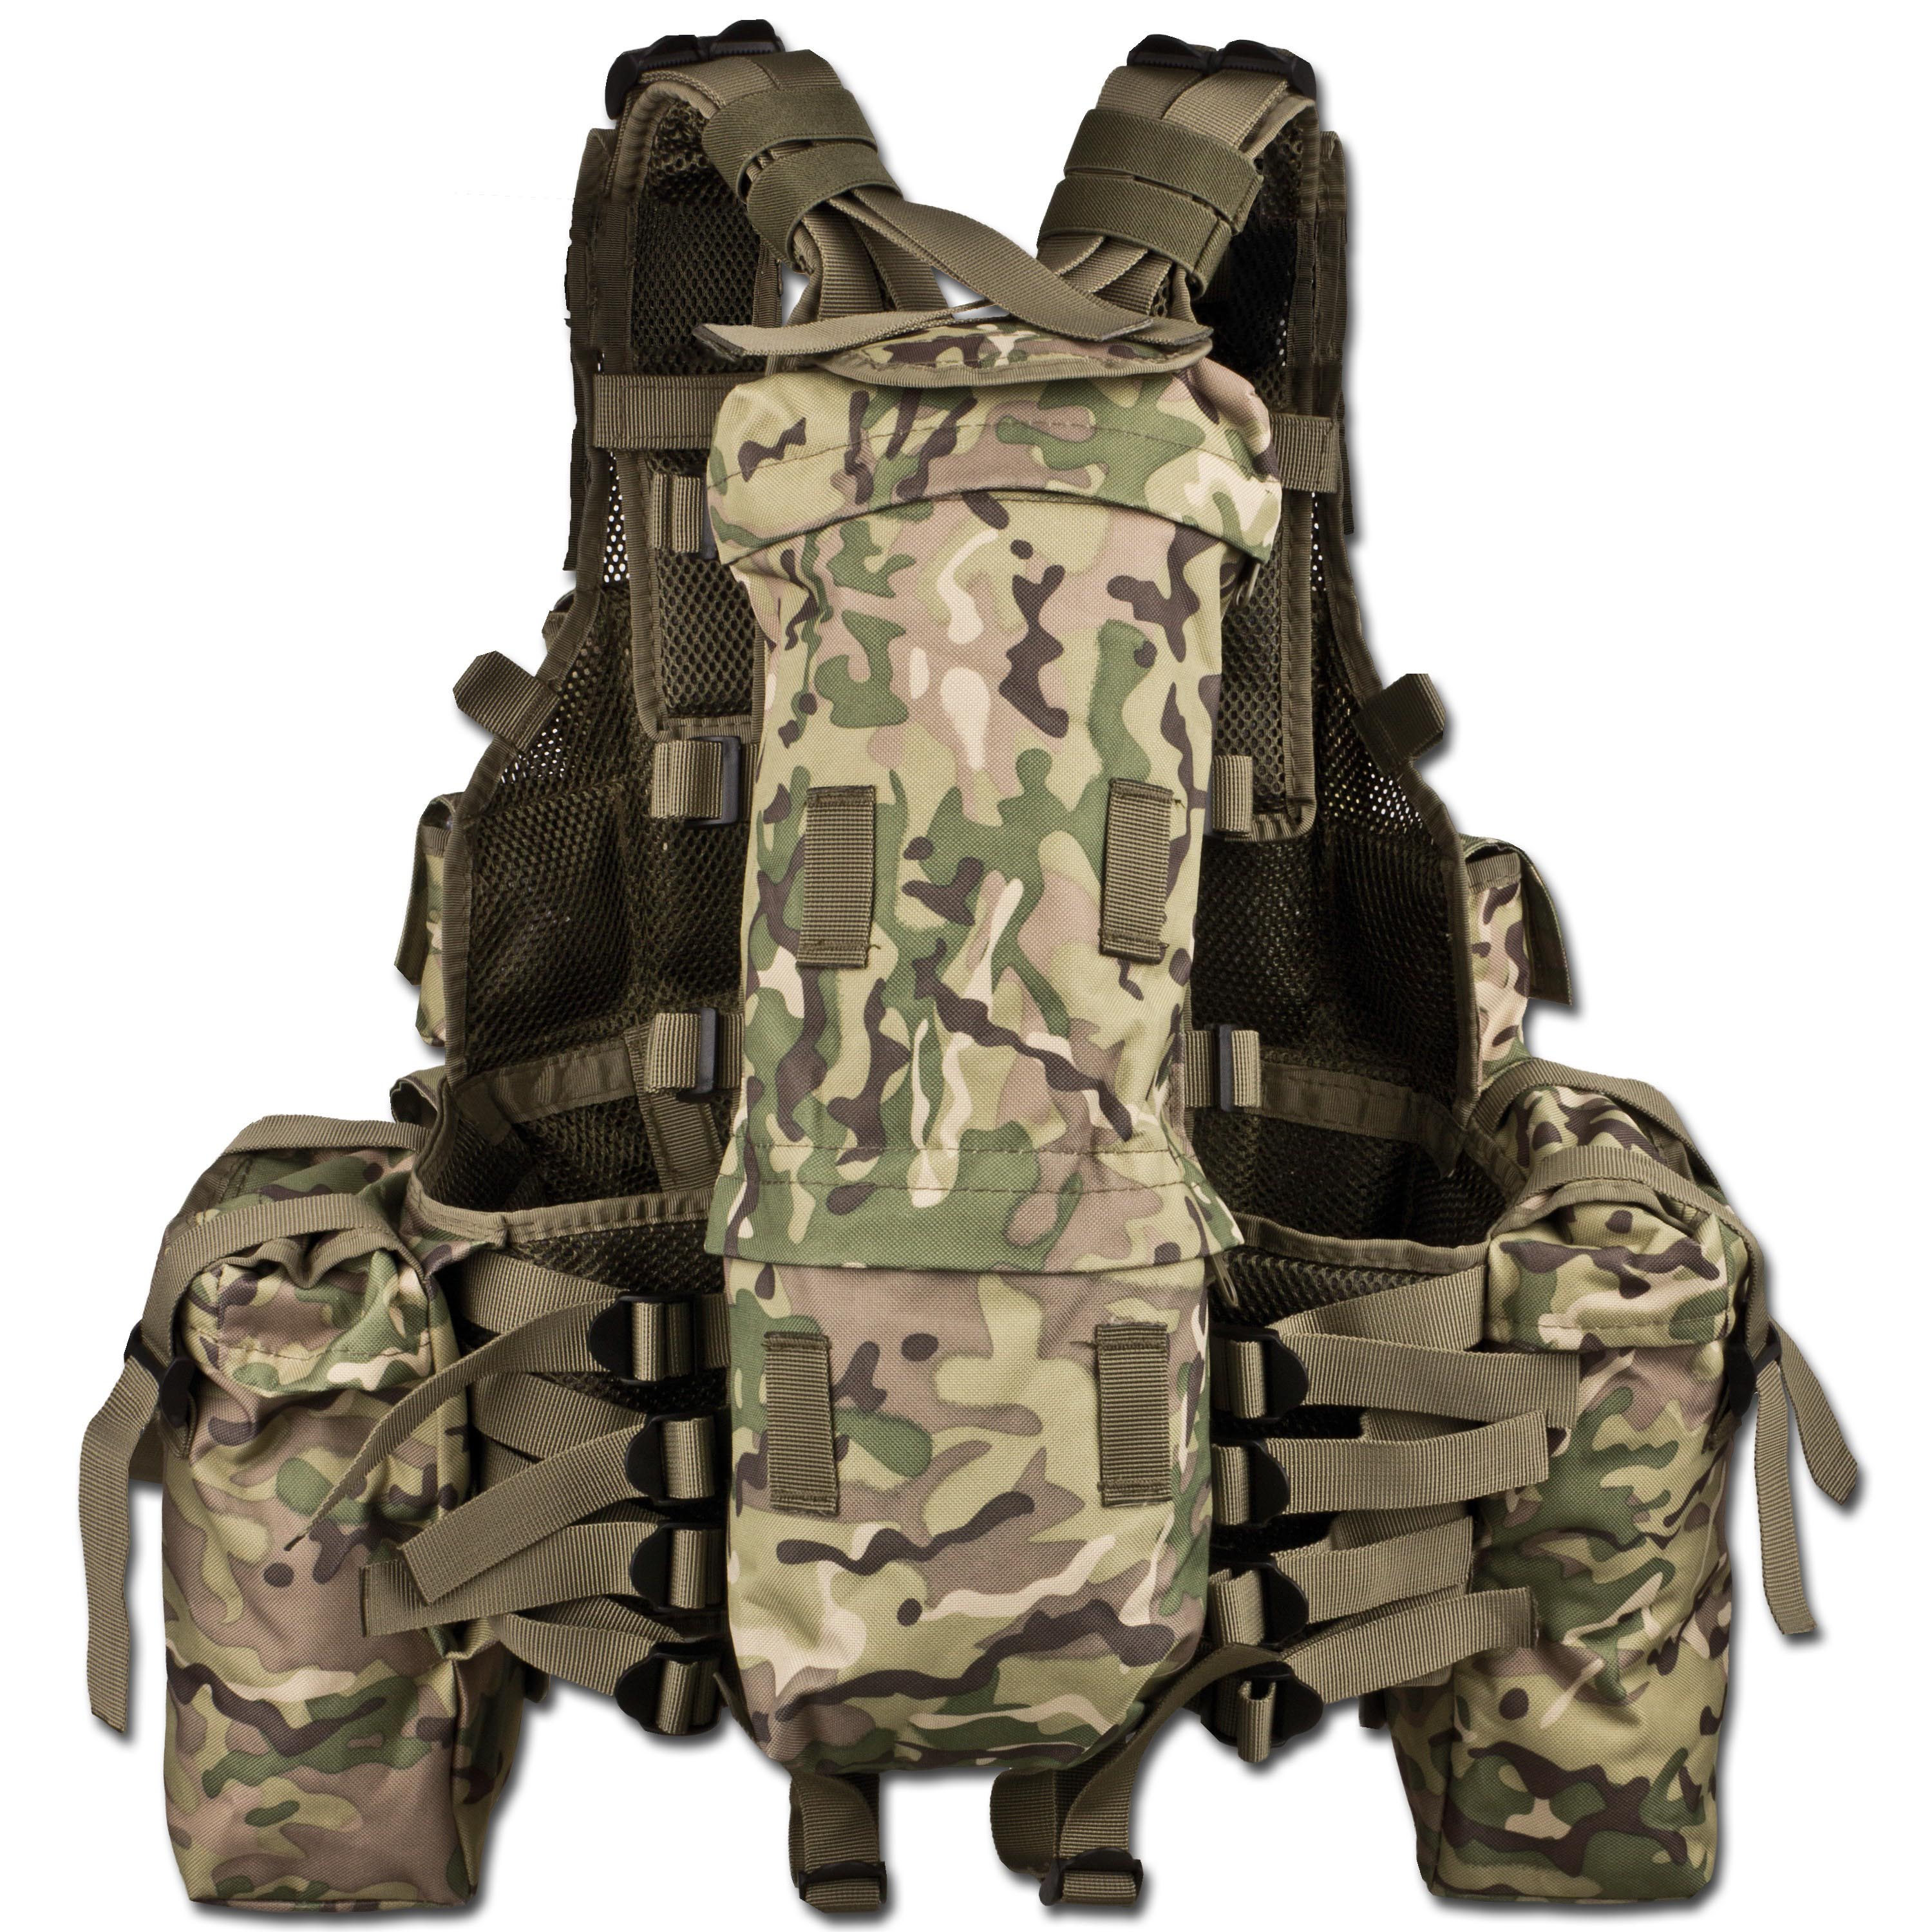 Purchase the Commando Vest RSA operation-camo by ASMC